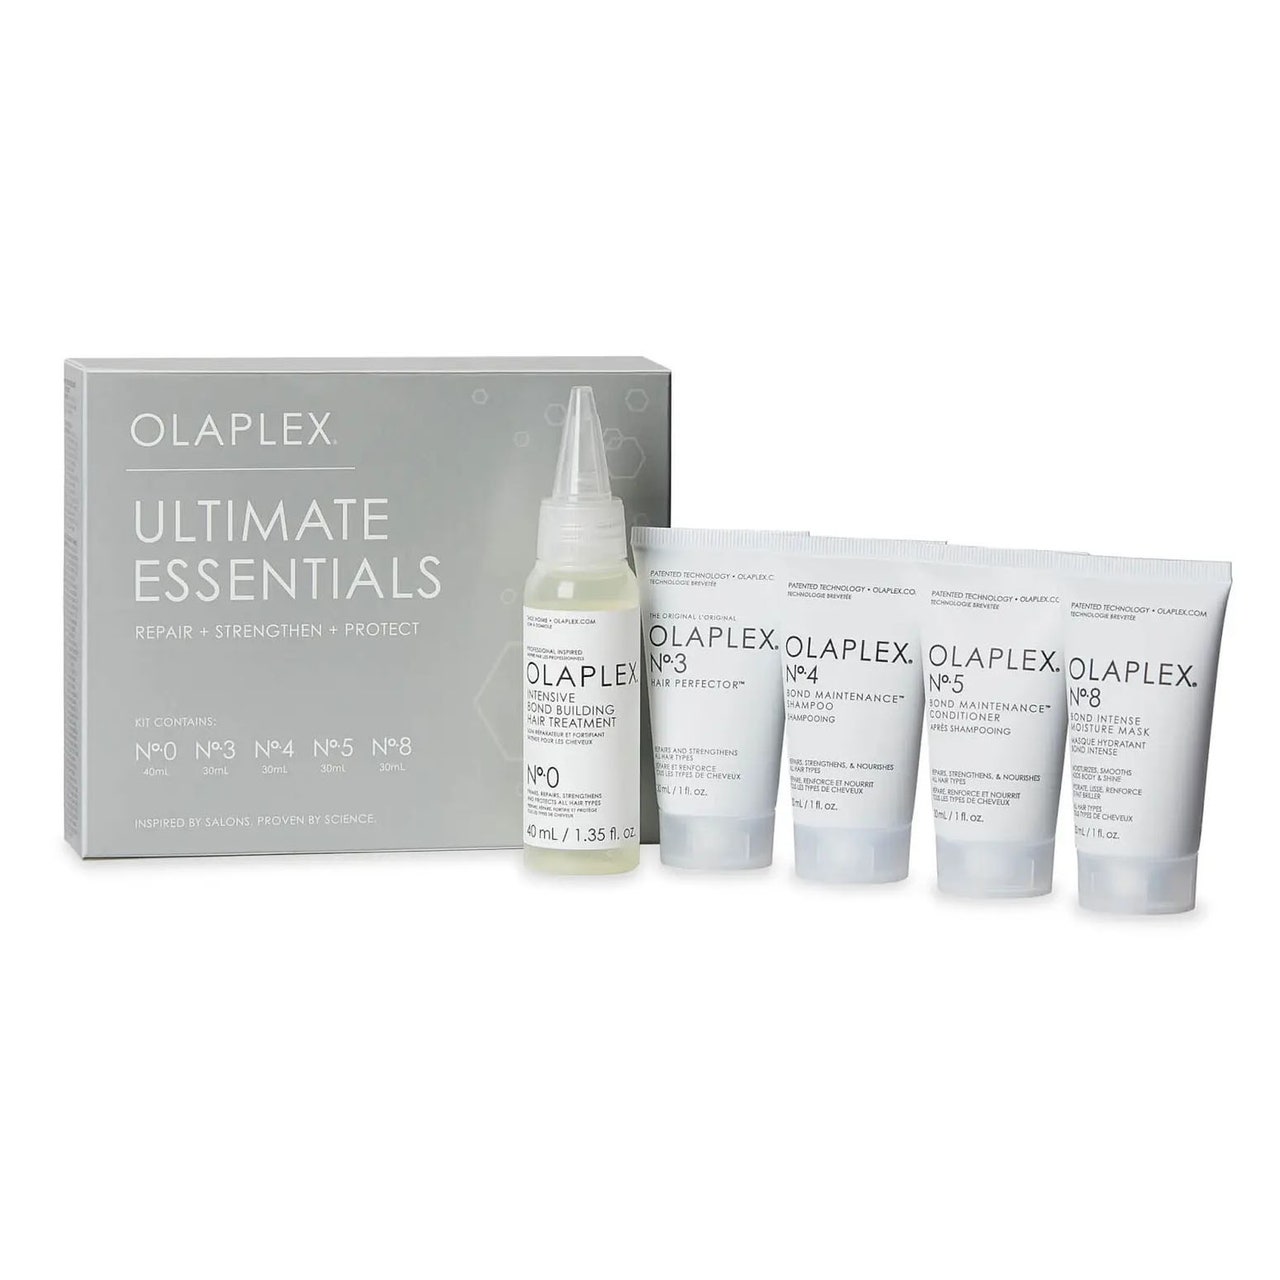 Olaplex Ultimate Essentials Kit fünf Produkte mit grauer Box auf weißem Hintergrund